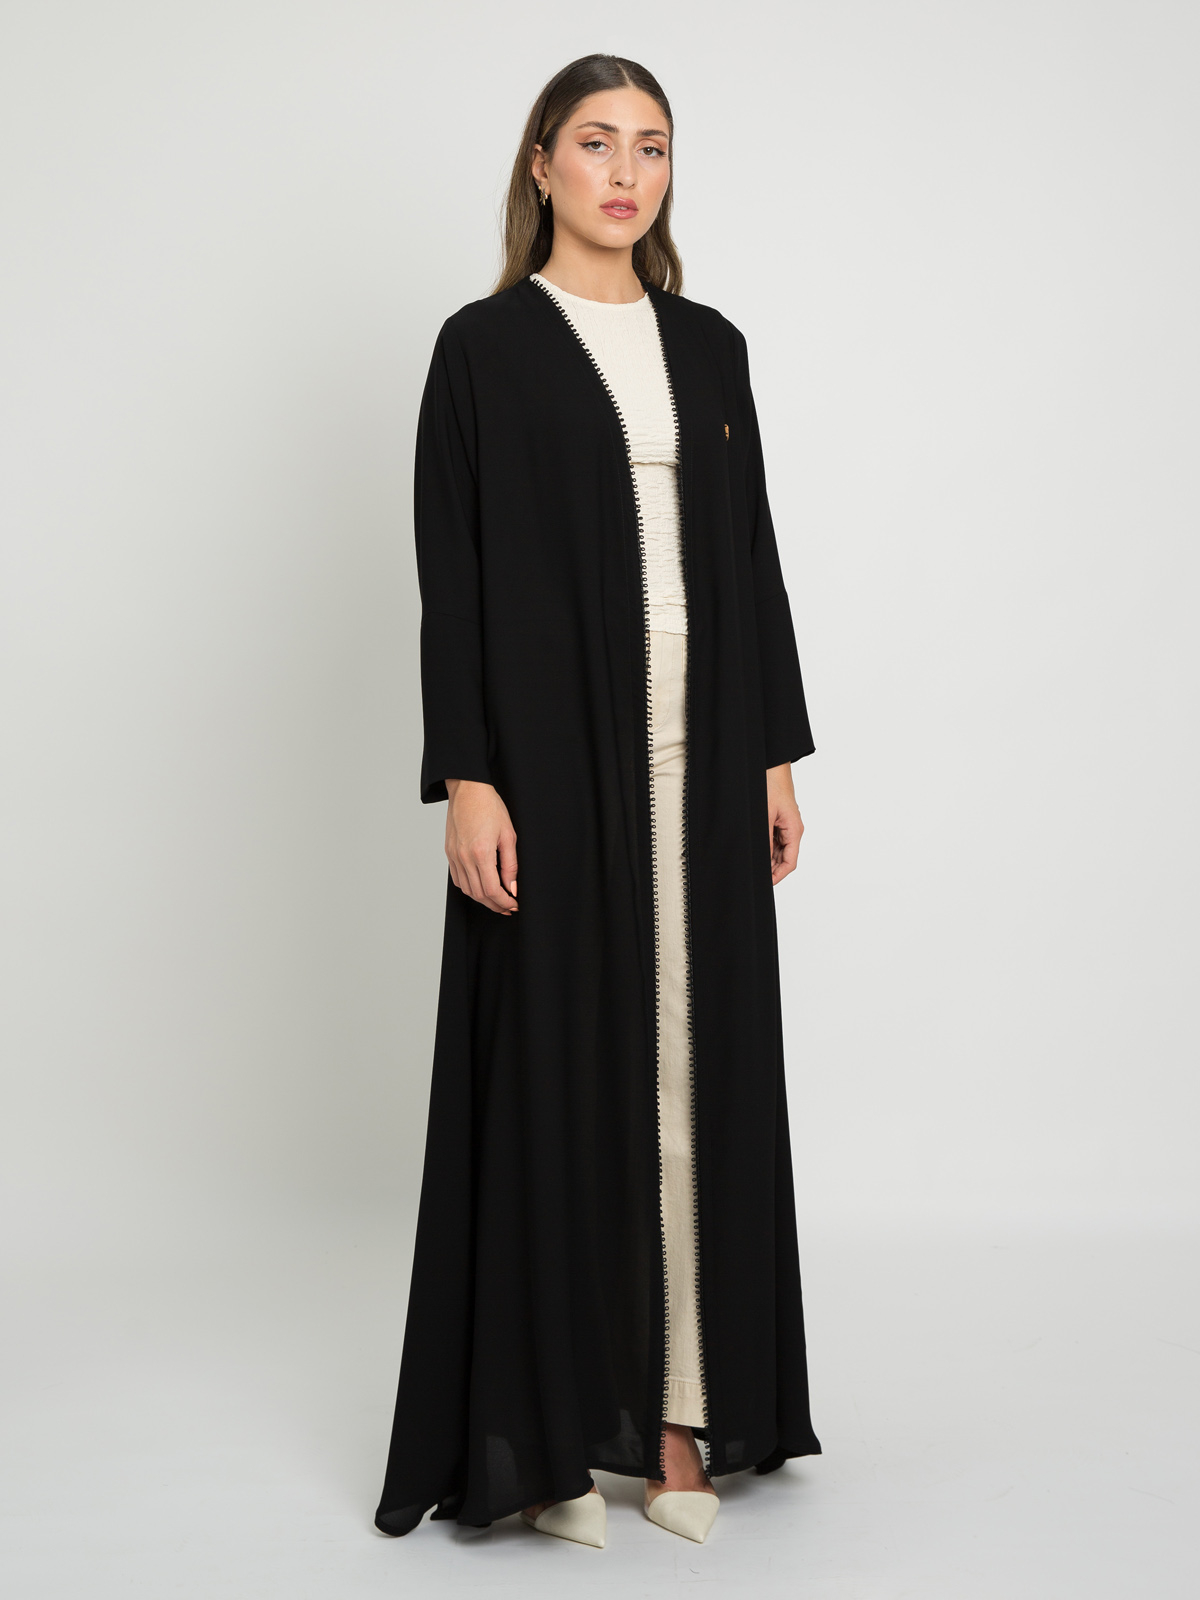 A-Cut Black Abaya with Black Qitan